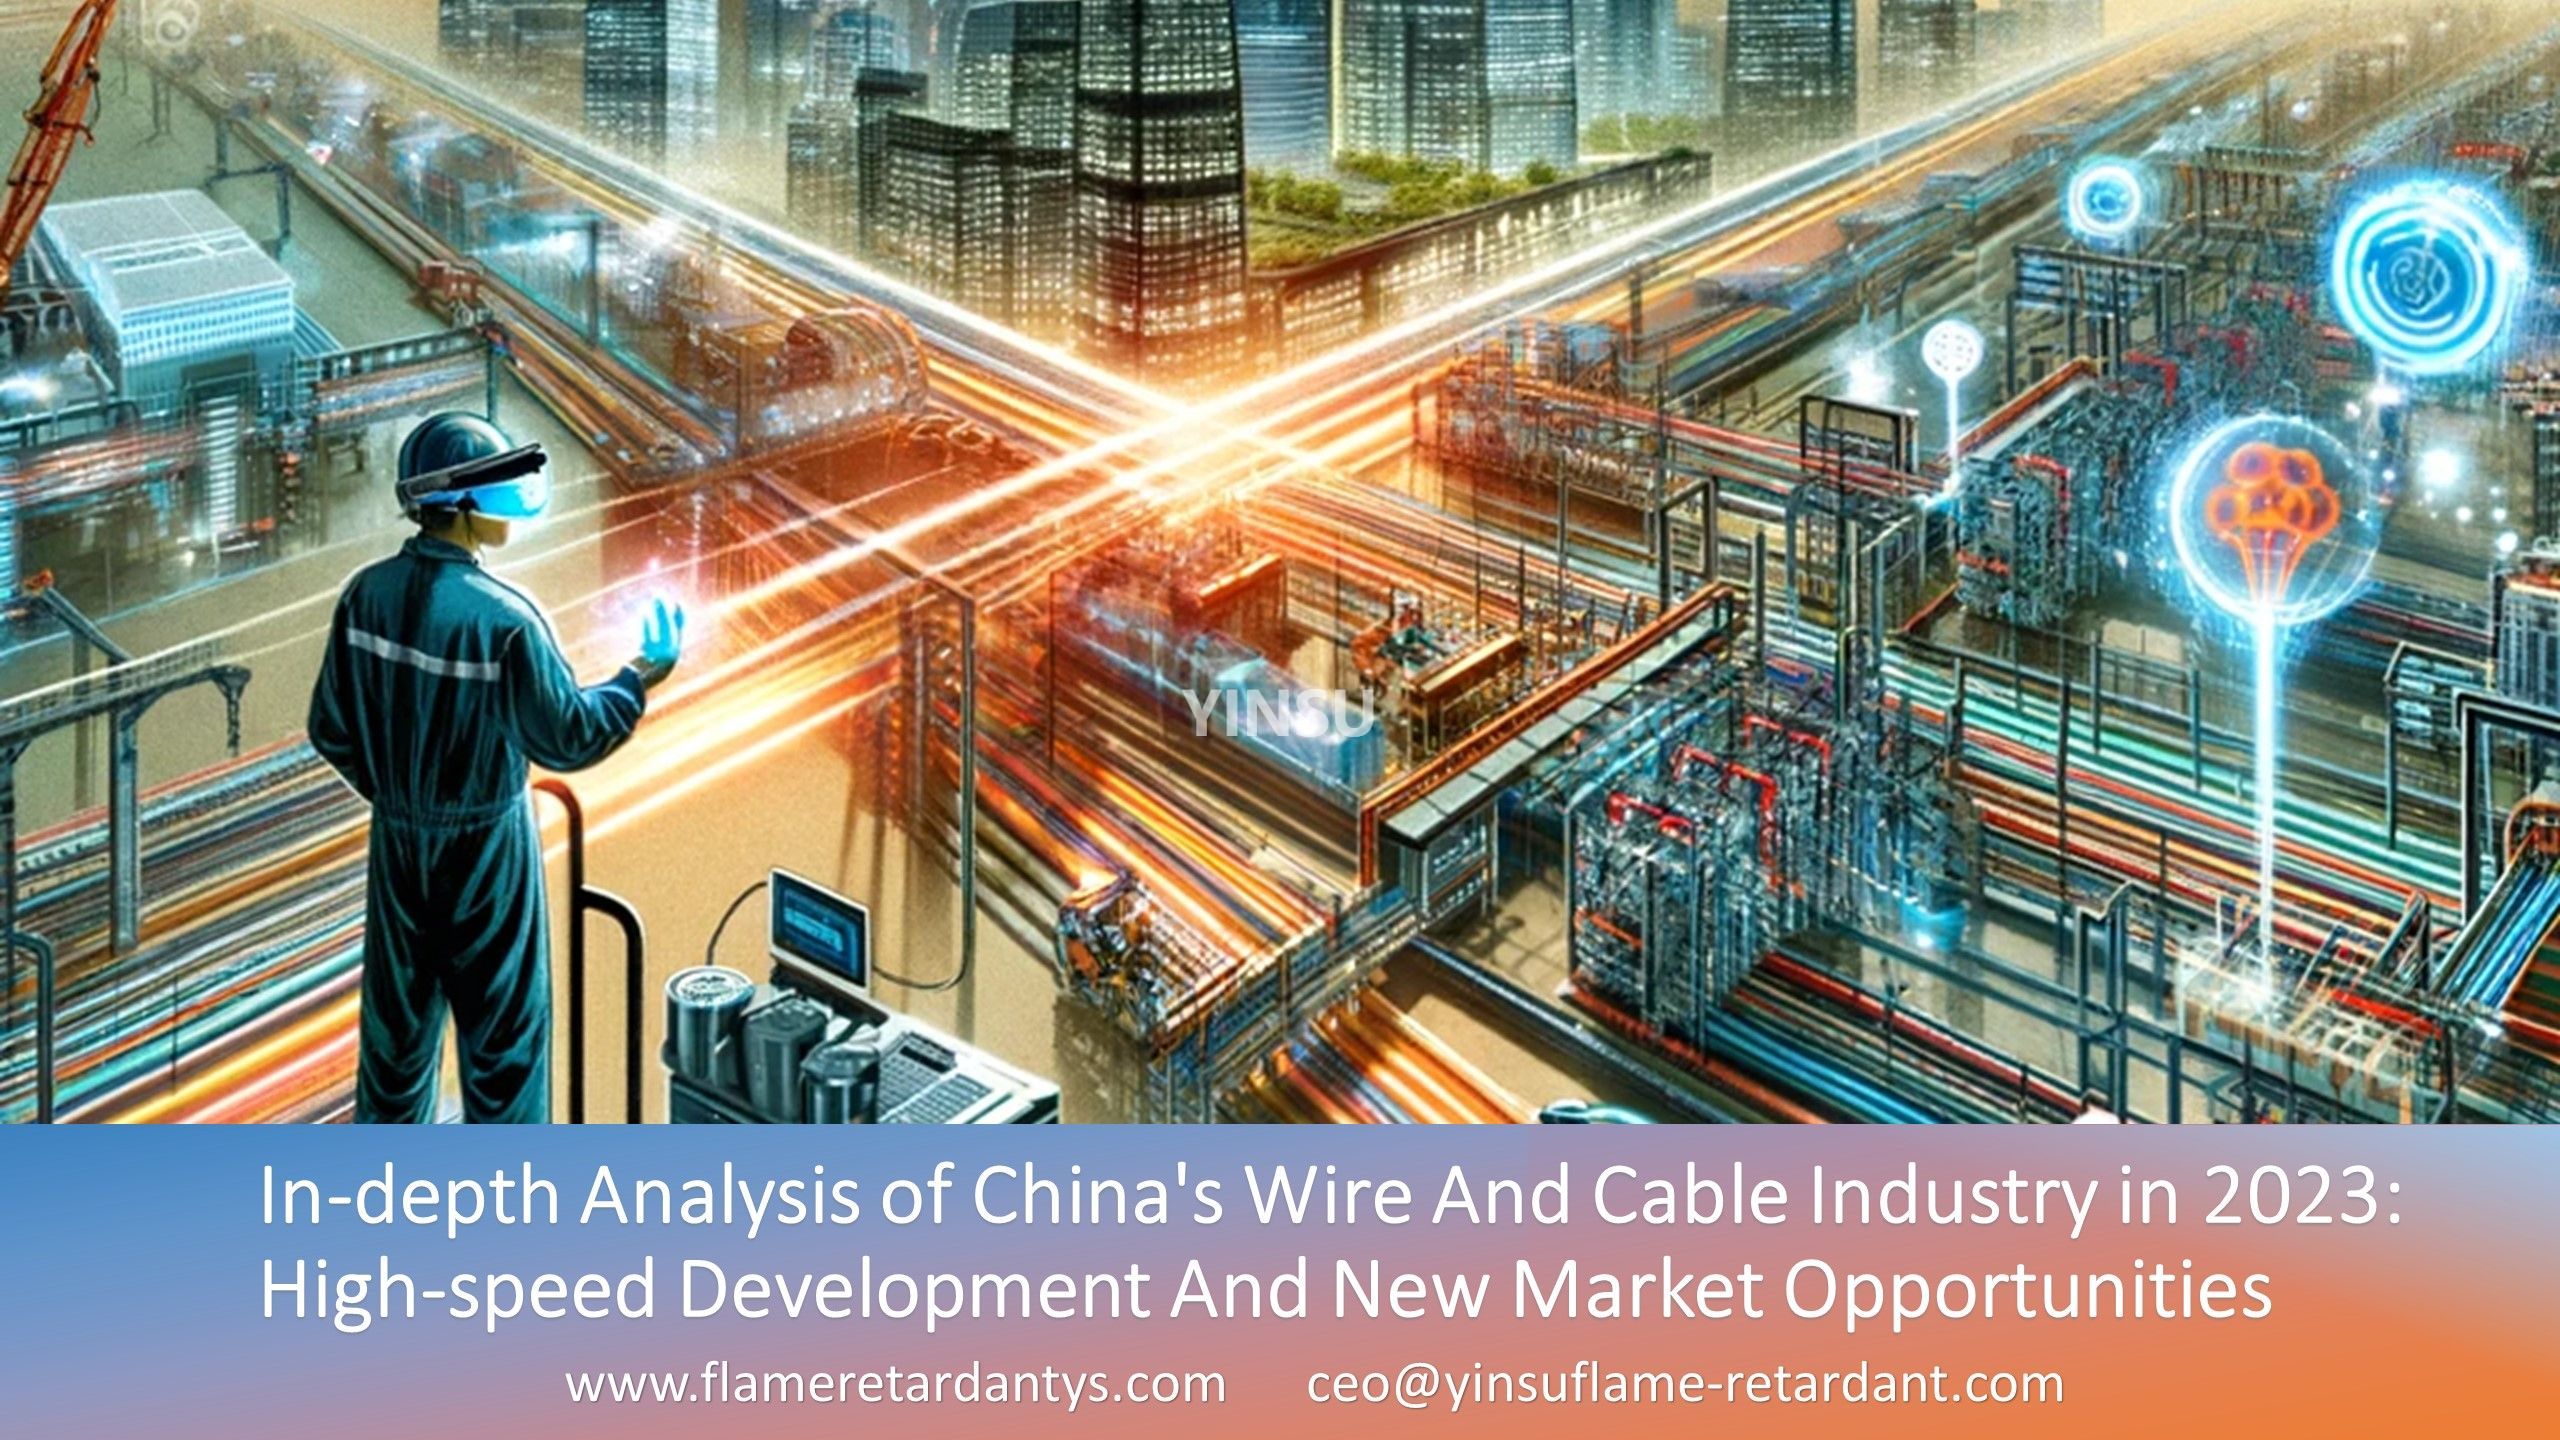 Углубленный анализ кабельной и проводной промышленности Китая в 2023 году